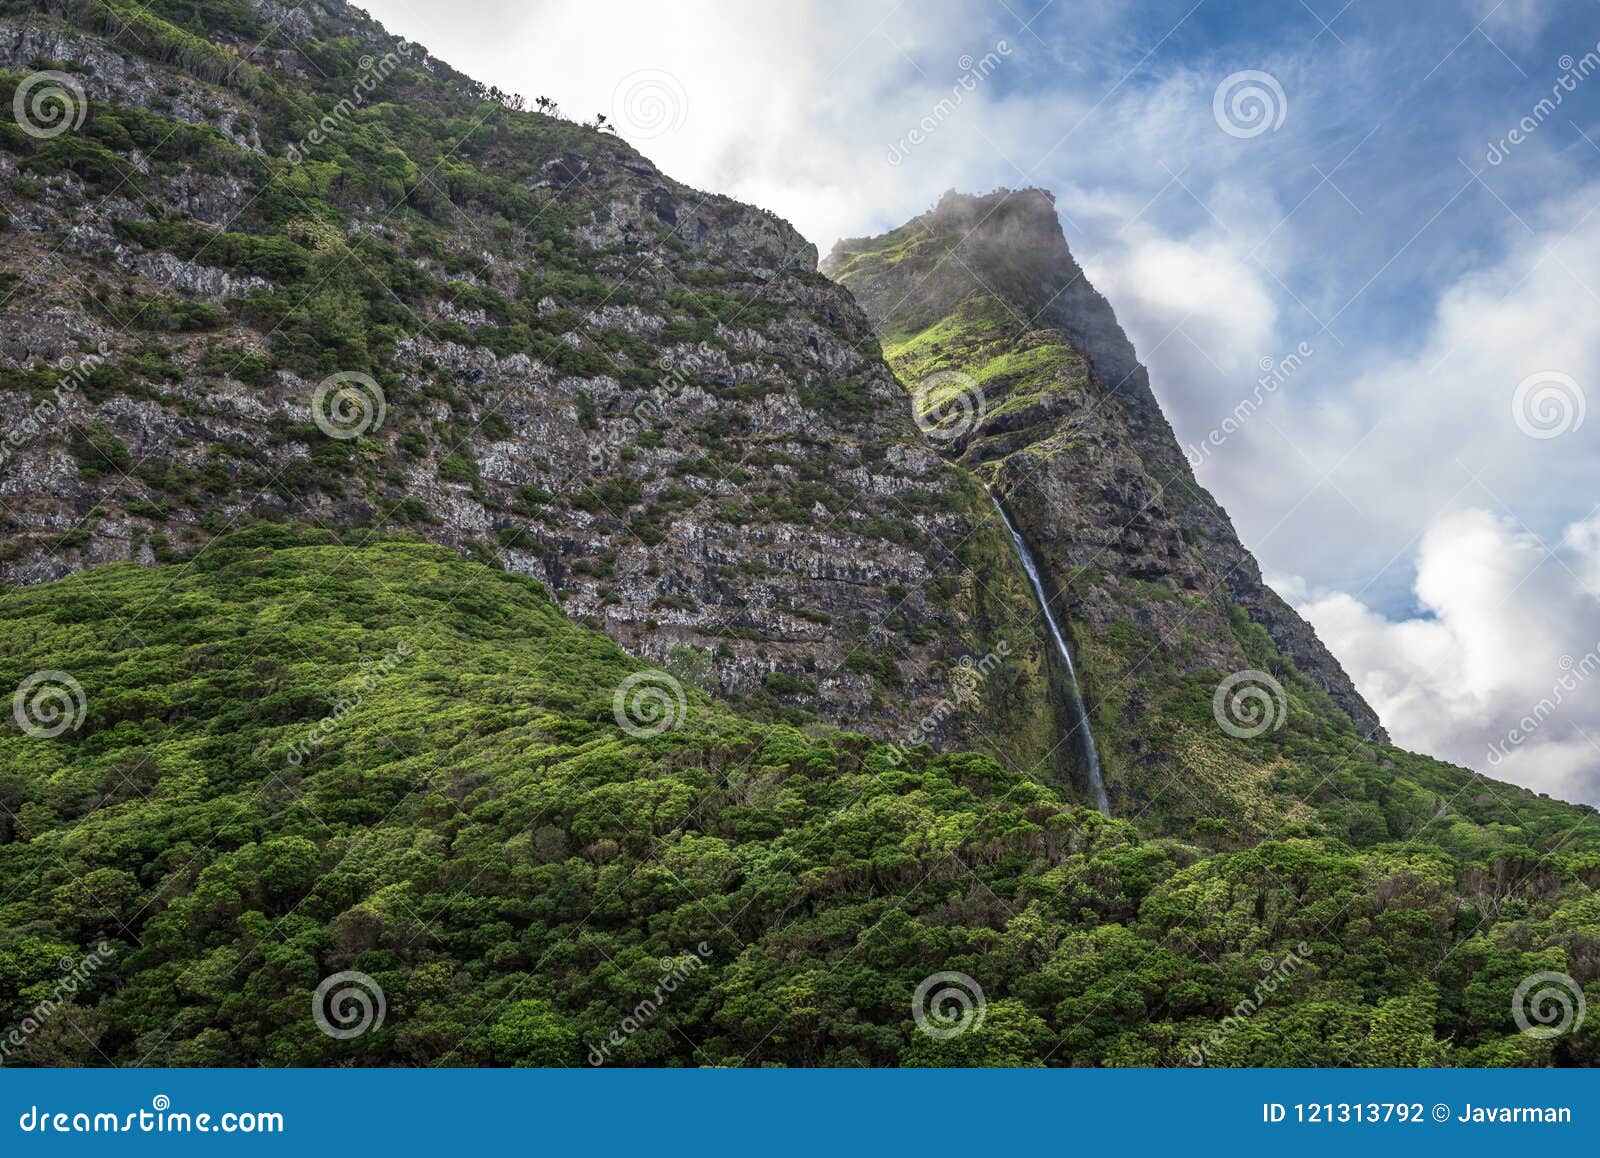 cascata do poÃÂ§o do bacalhau, a waterfall on the azores island o